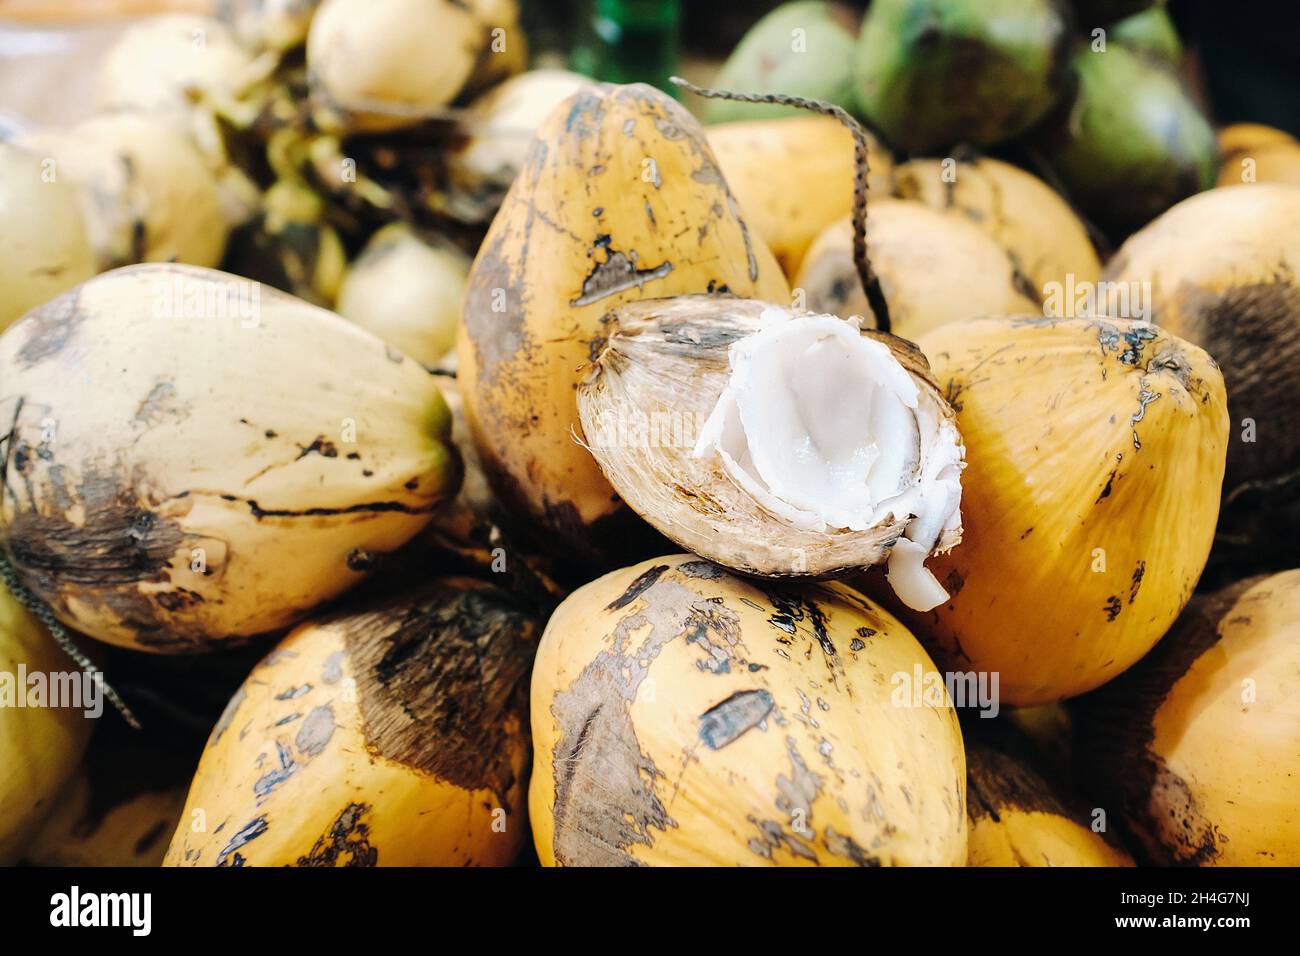 Gelbe Kokosnüsse werden auf dem Markt der Insel Mauritius verkauft. Schneiden Sie eine junge Kokosnuss mit Makoto. Viele Kokosnüsse auf dem Markt. Stockfoto